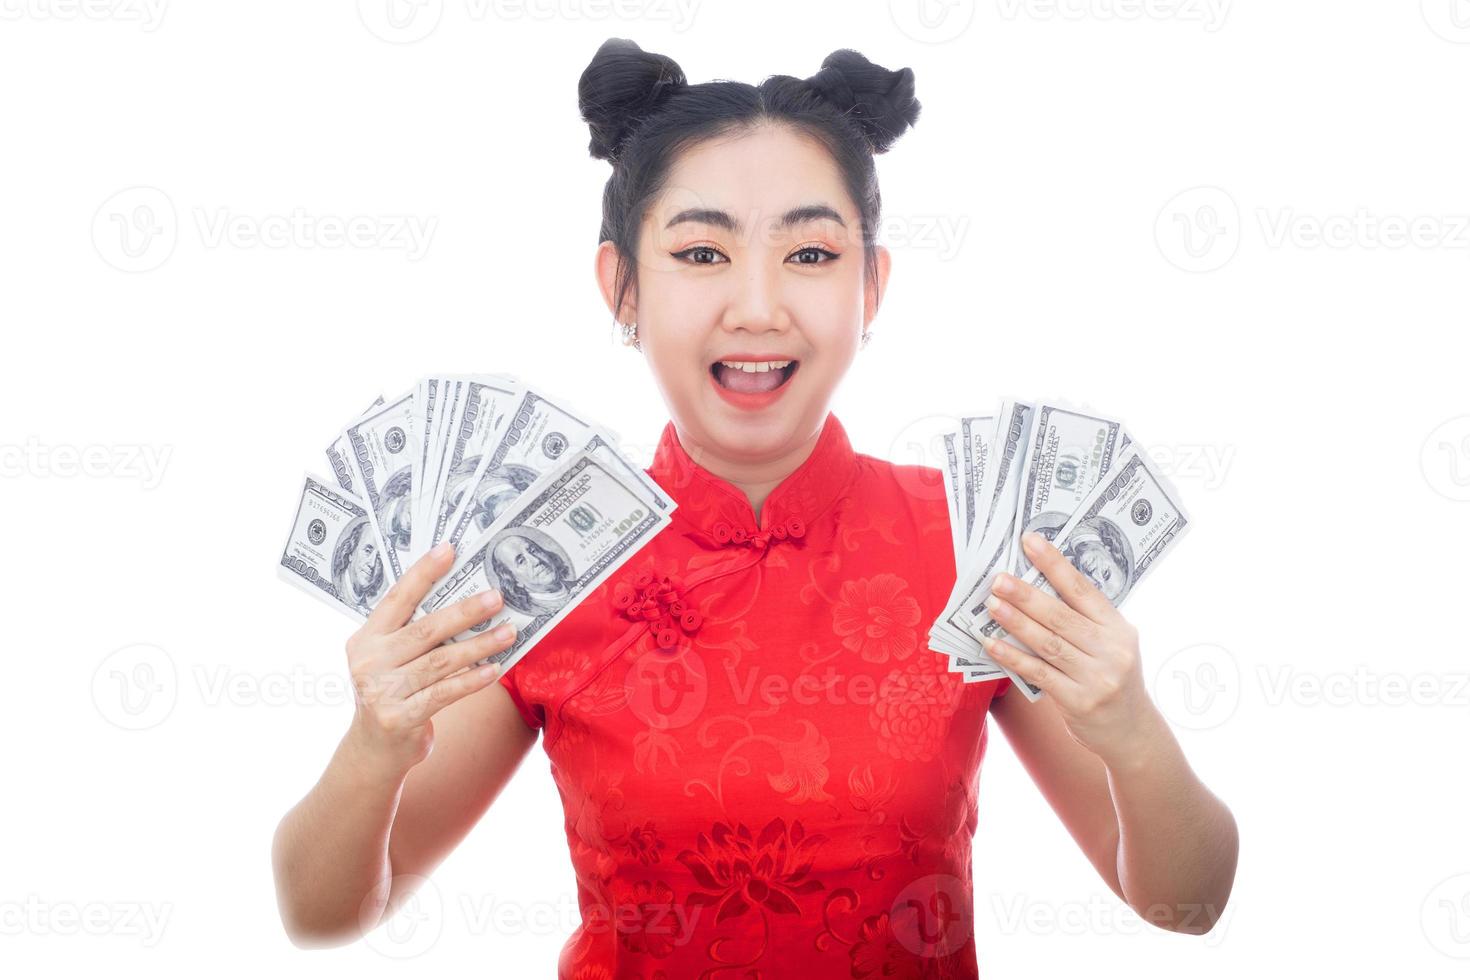 porträtt asiatisk kvinna röd klänning traditionell cheongsam håller pengar 100 amerikanska dollarsedlar på vit bakgrund foto